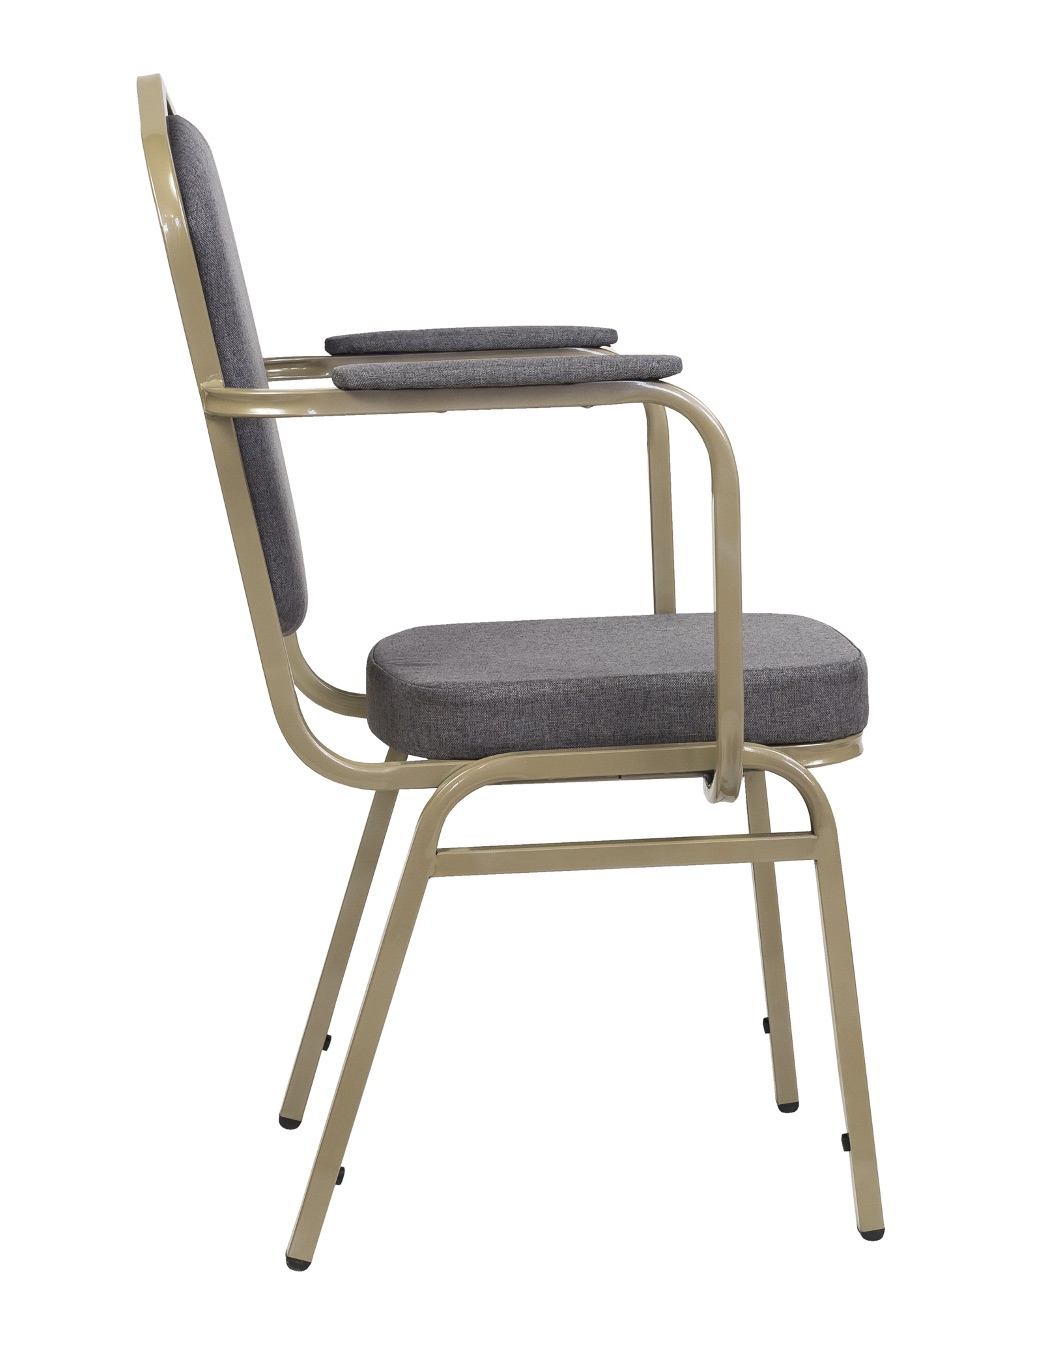 легкий стул с подлокотниками